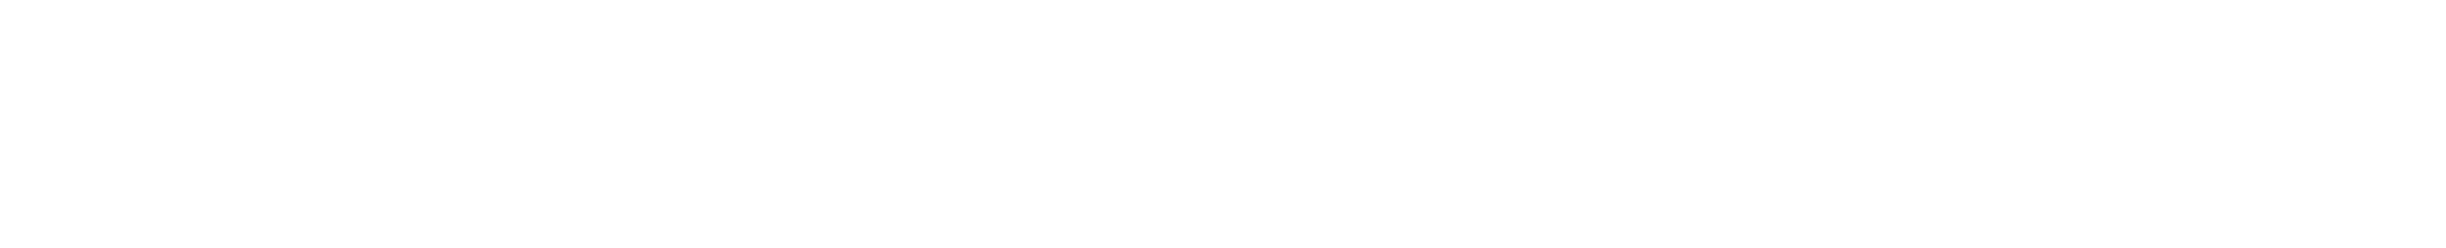 bs logo